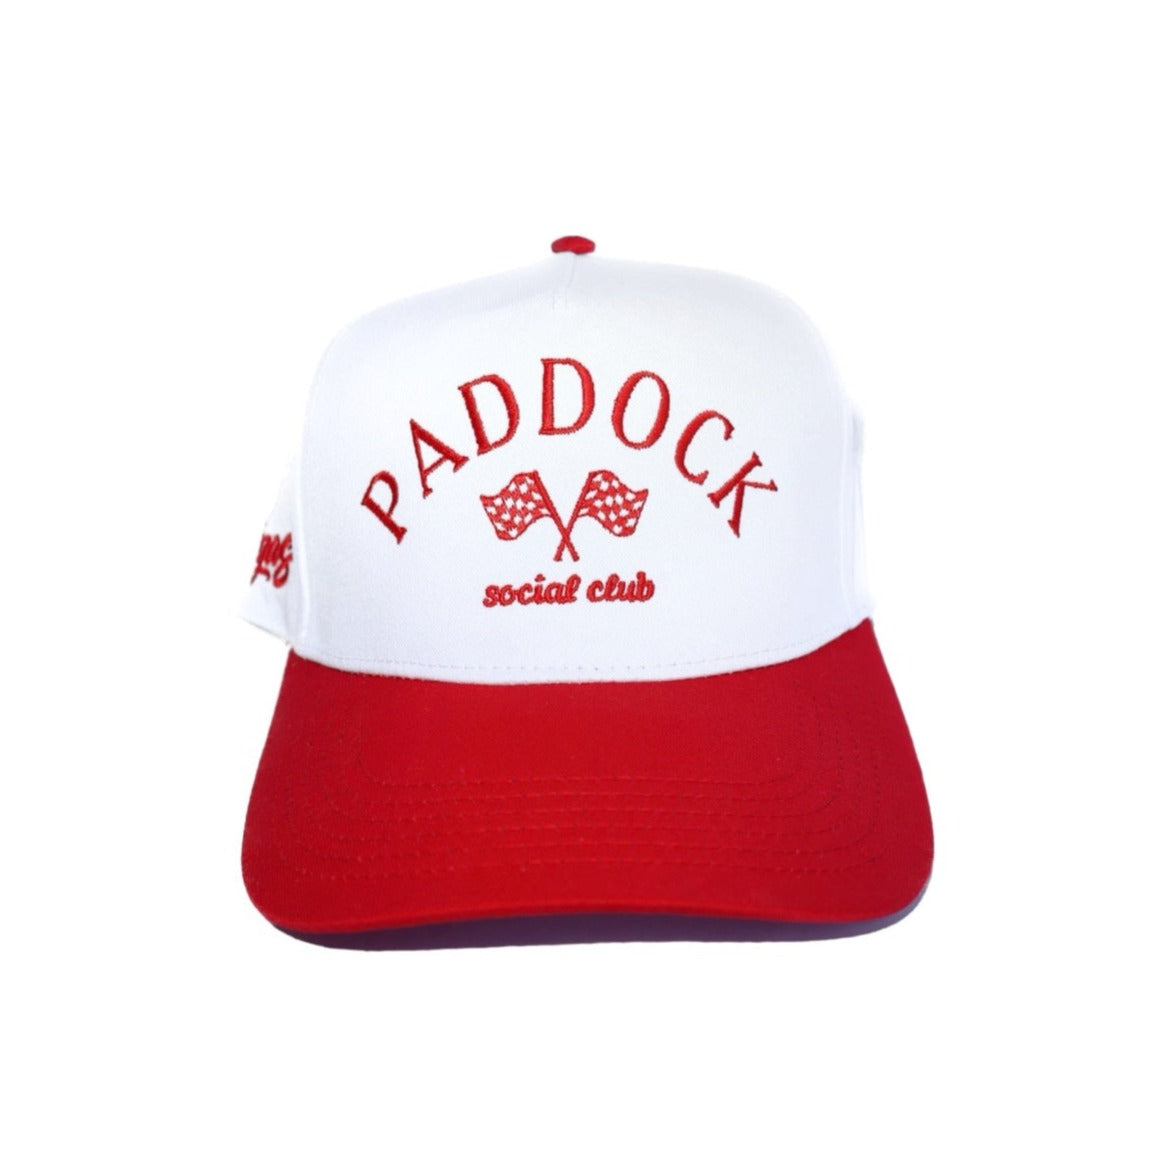 Paddock Social Club Hat Las Vegas Edition - White + Red